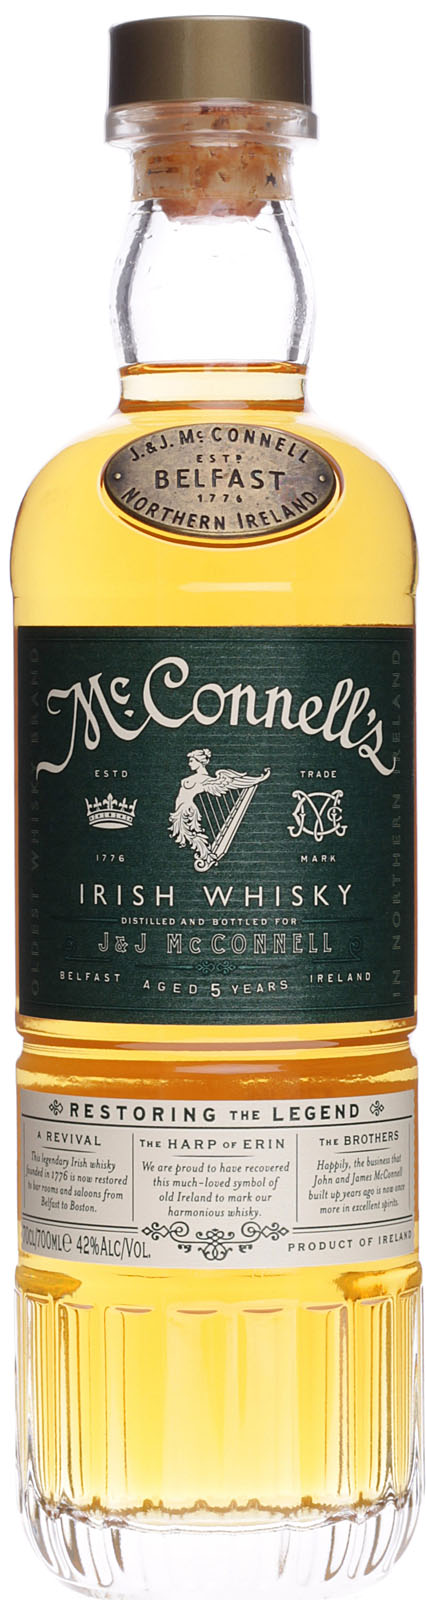 McConnell´s Irish Whisky günstig und schnell bei uns i